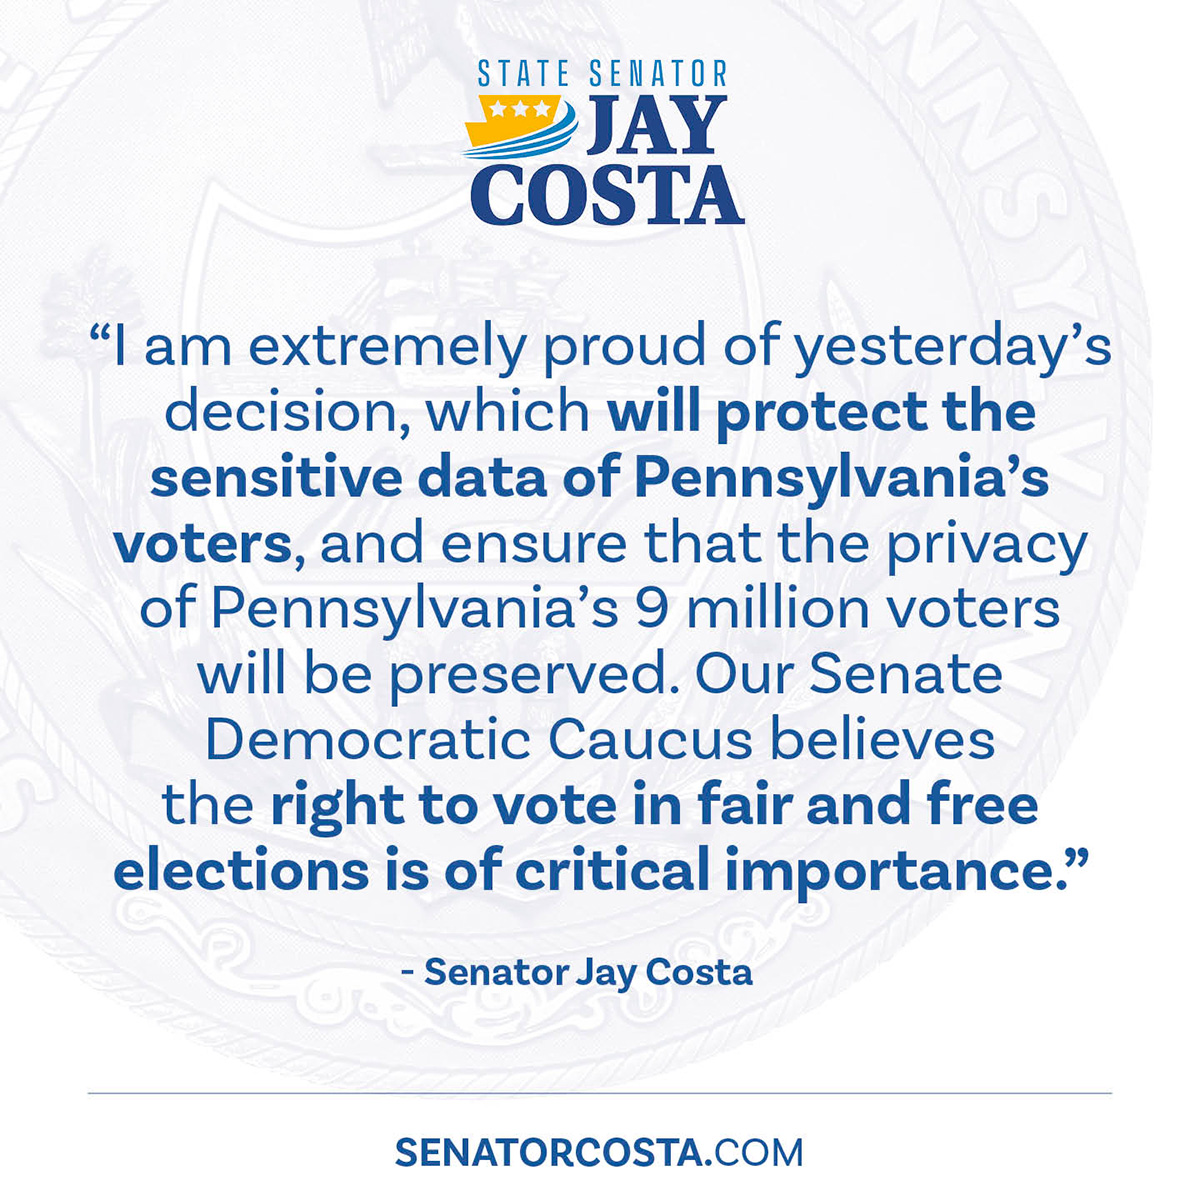 "Estoy muy orgulloso de la decisión de ayer, que protegerá los datos confidenciales de los votantes de Pensilvania y garantizará la privacidad de los 9 millones de votantes de Pensilvania", declaró el senador Costa.